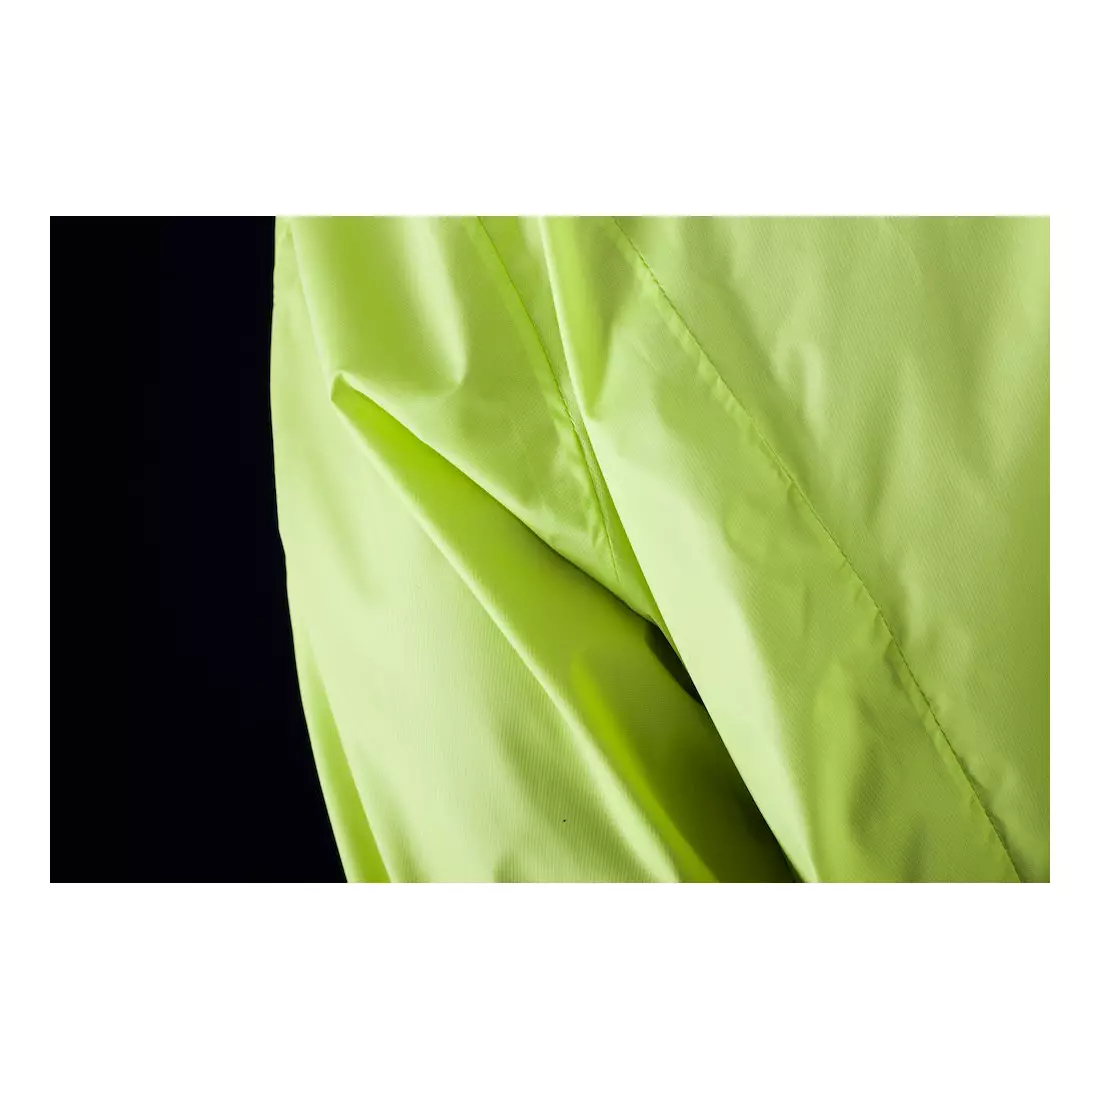 Jachetă de ciclism pentru bărbați CRAFT MOVE, rezistentă la ploaie 1902578-2851 culoare: fluor